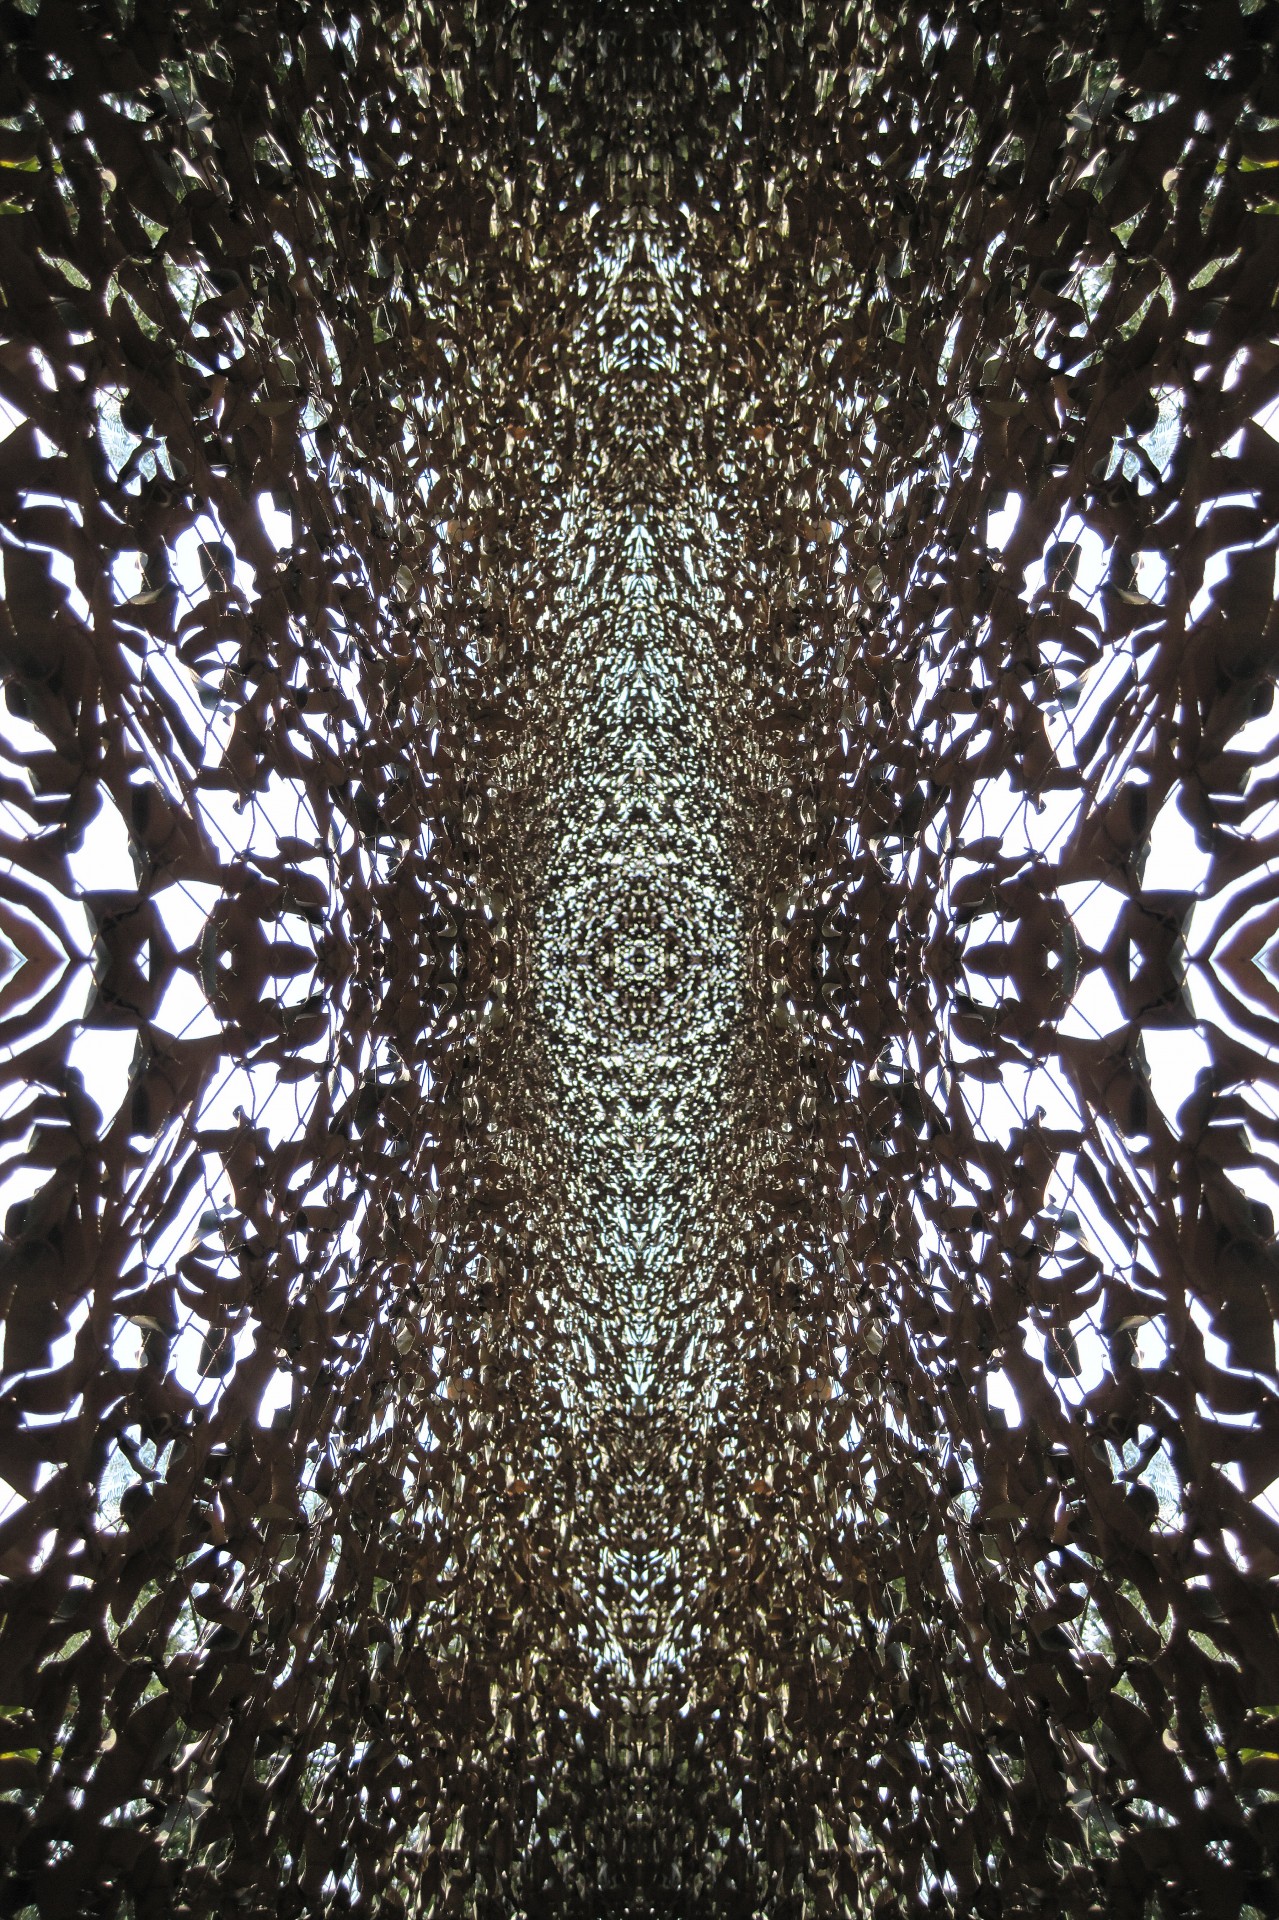 netting camouflage pattern free photo